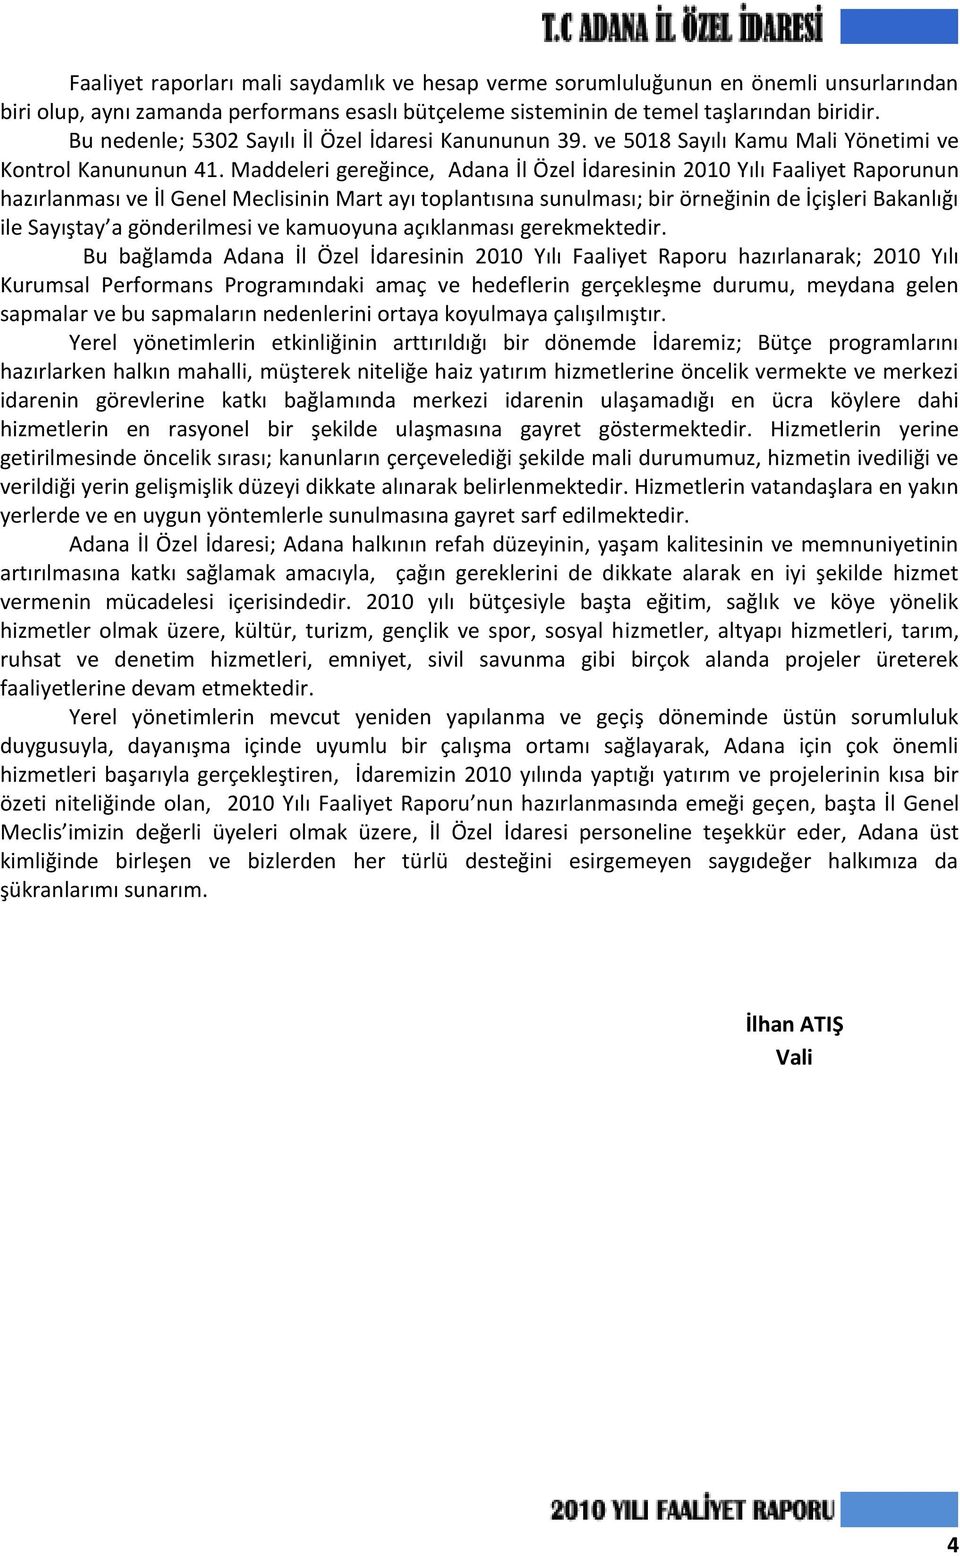 Maddeleri gereğince, Adana İl Özel İdaresinin 2010 Yılı Faaliyet Raporunun hazırlanması ve İl Genel Meclisinin Mart ayı toplantısına sunulması; bir örneğinin de İçişleri Bakanlığı ile Sayıştay a